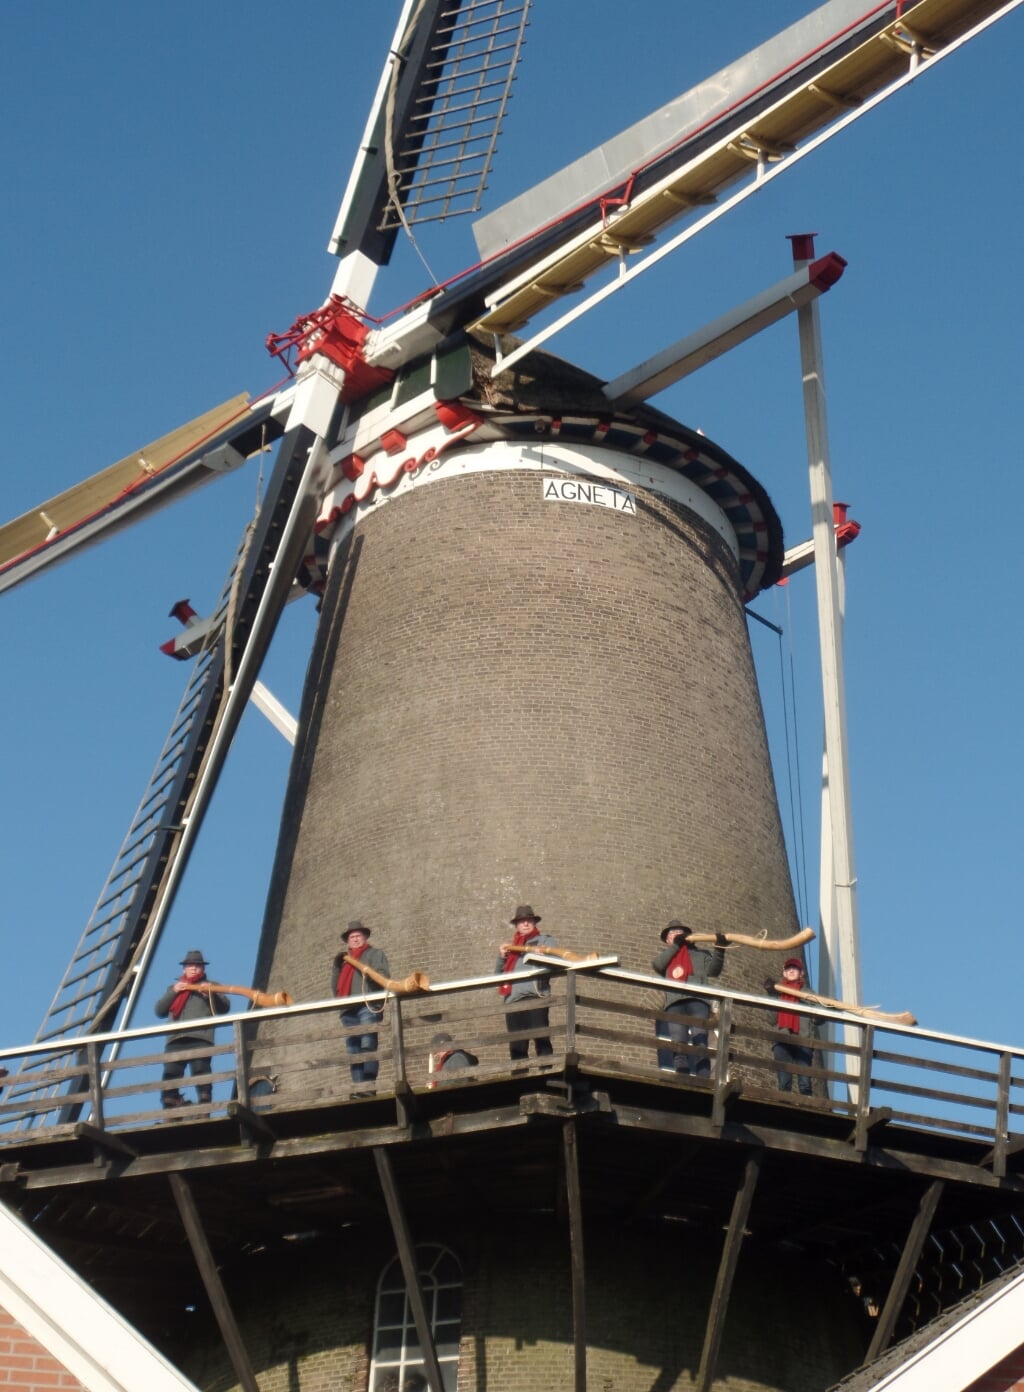 Anblaozen vanaf de molen Agneta. Foto: Jan Hendriksen